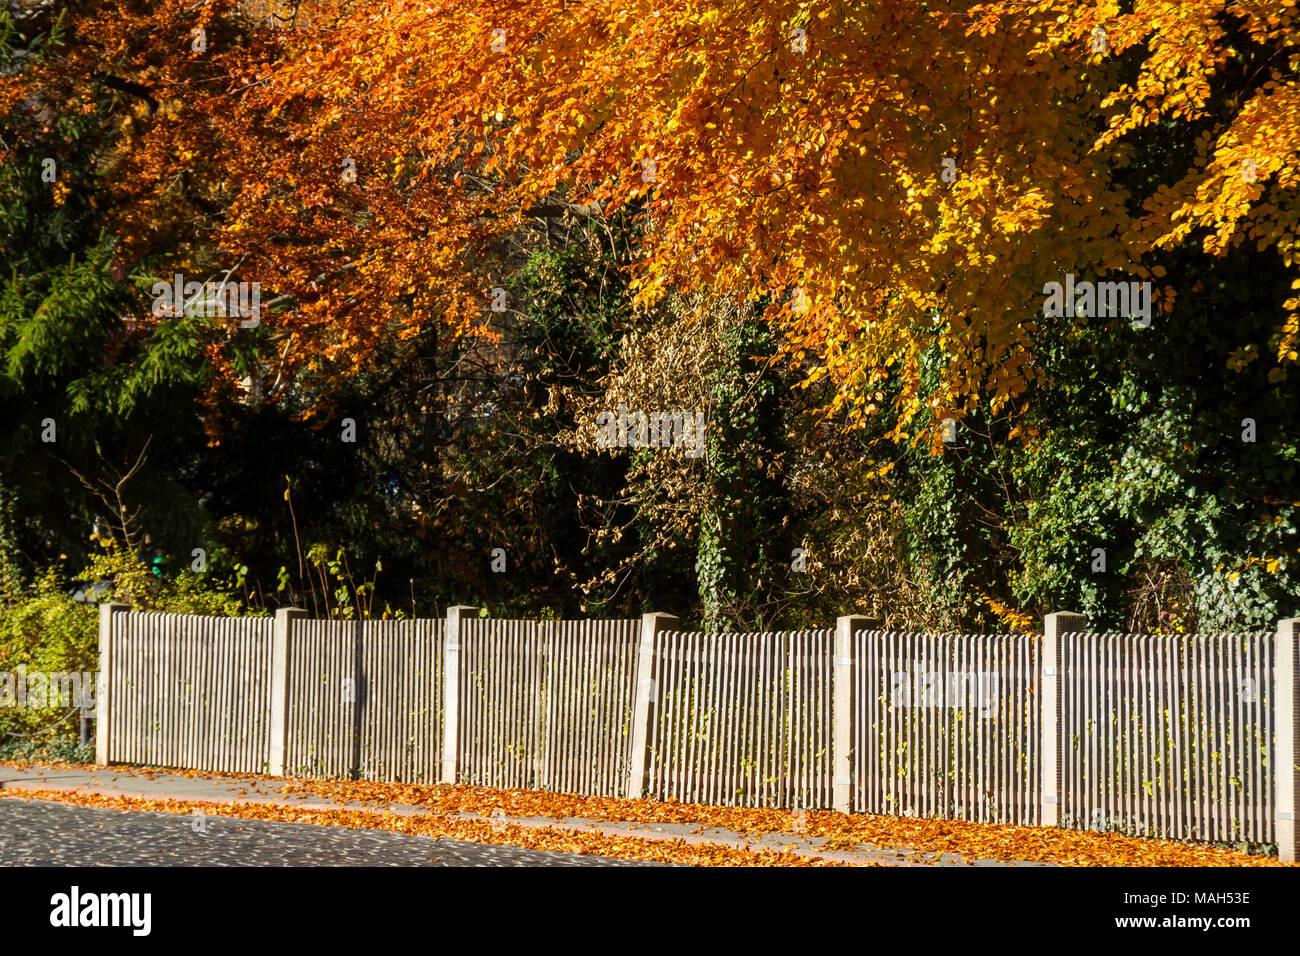 Lattenzaun mit Bäumen und Laubfärbung im Herbst Foto Stock